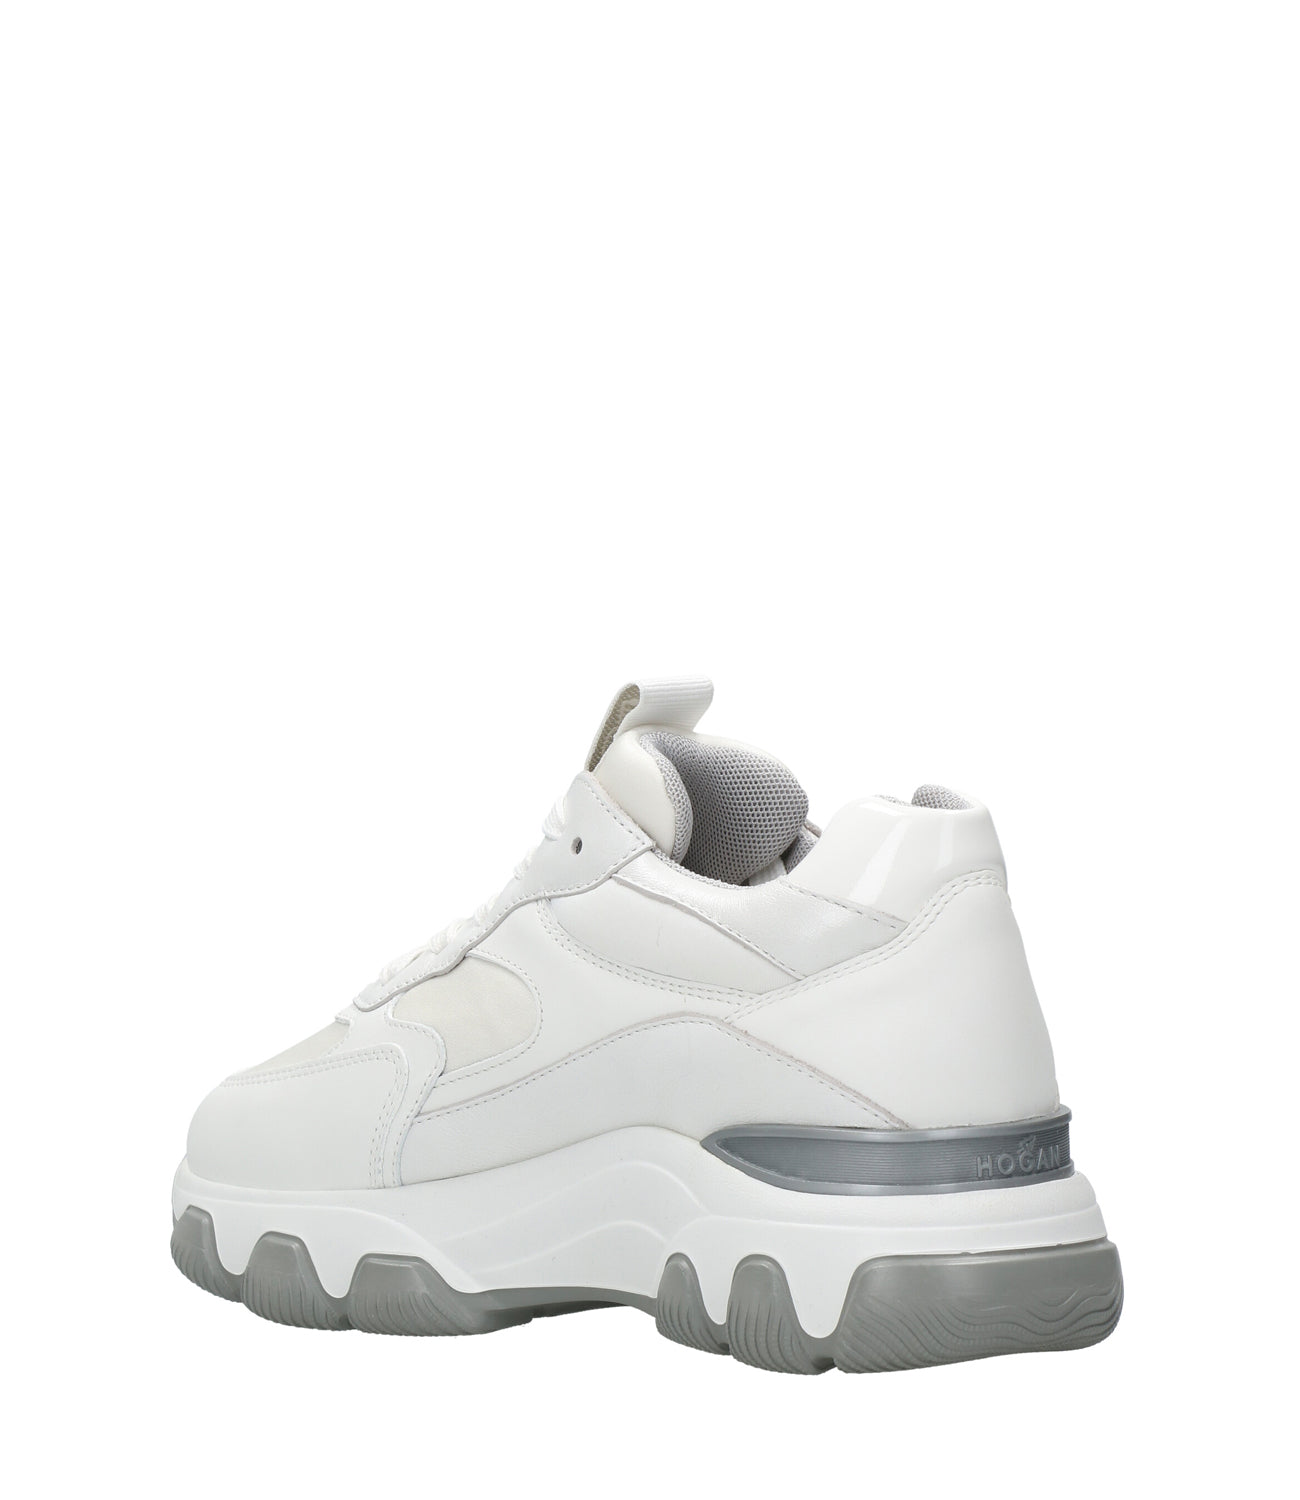 Hogan | Sneakers Hyperactive Bianco e Argento